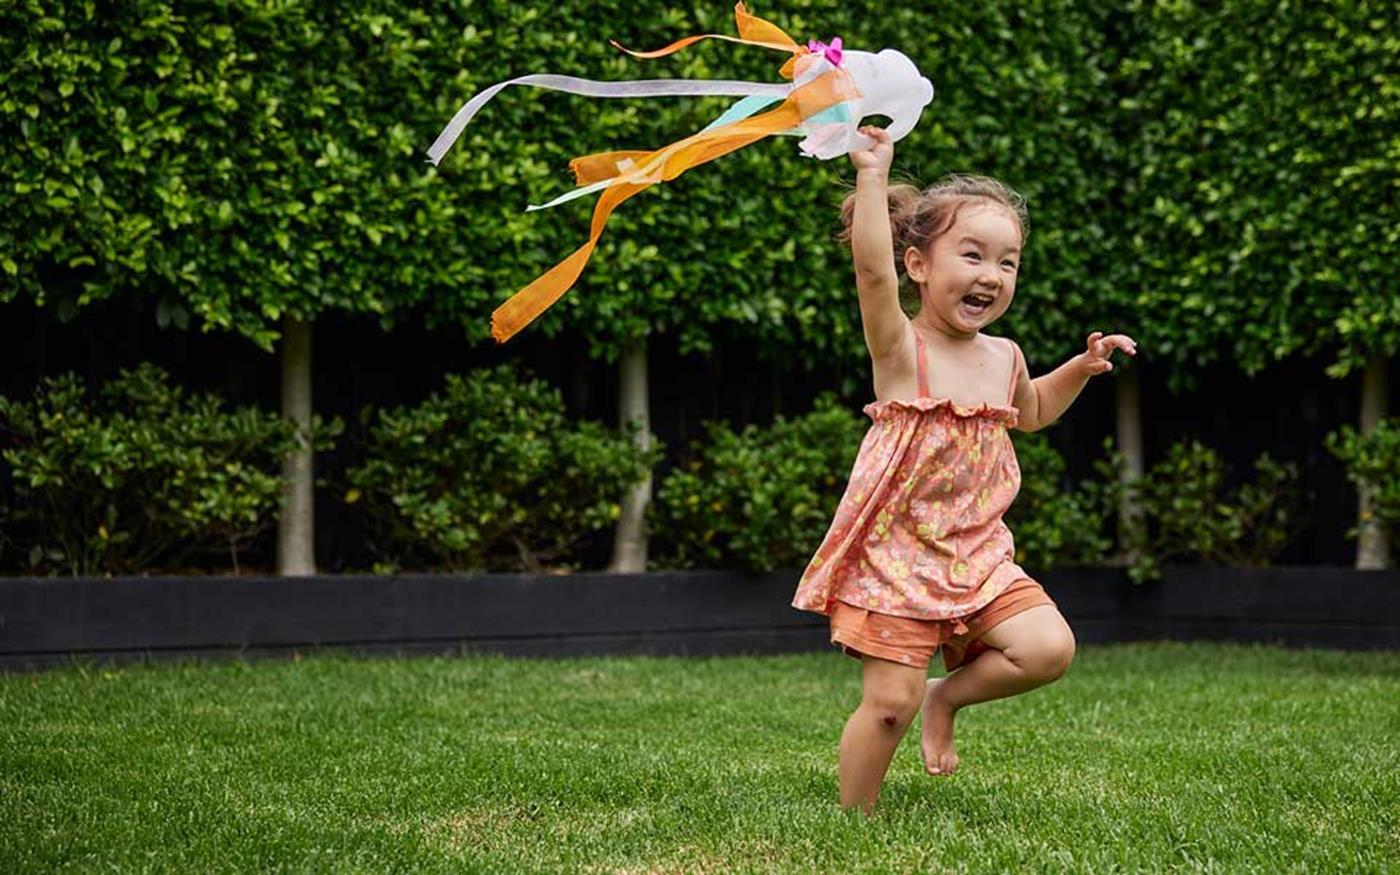 Little girl running with handheld kite